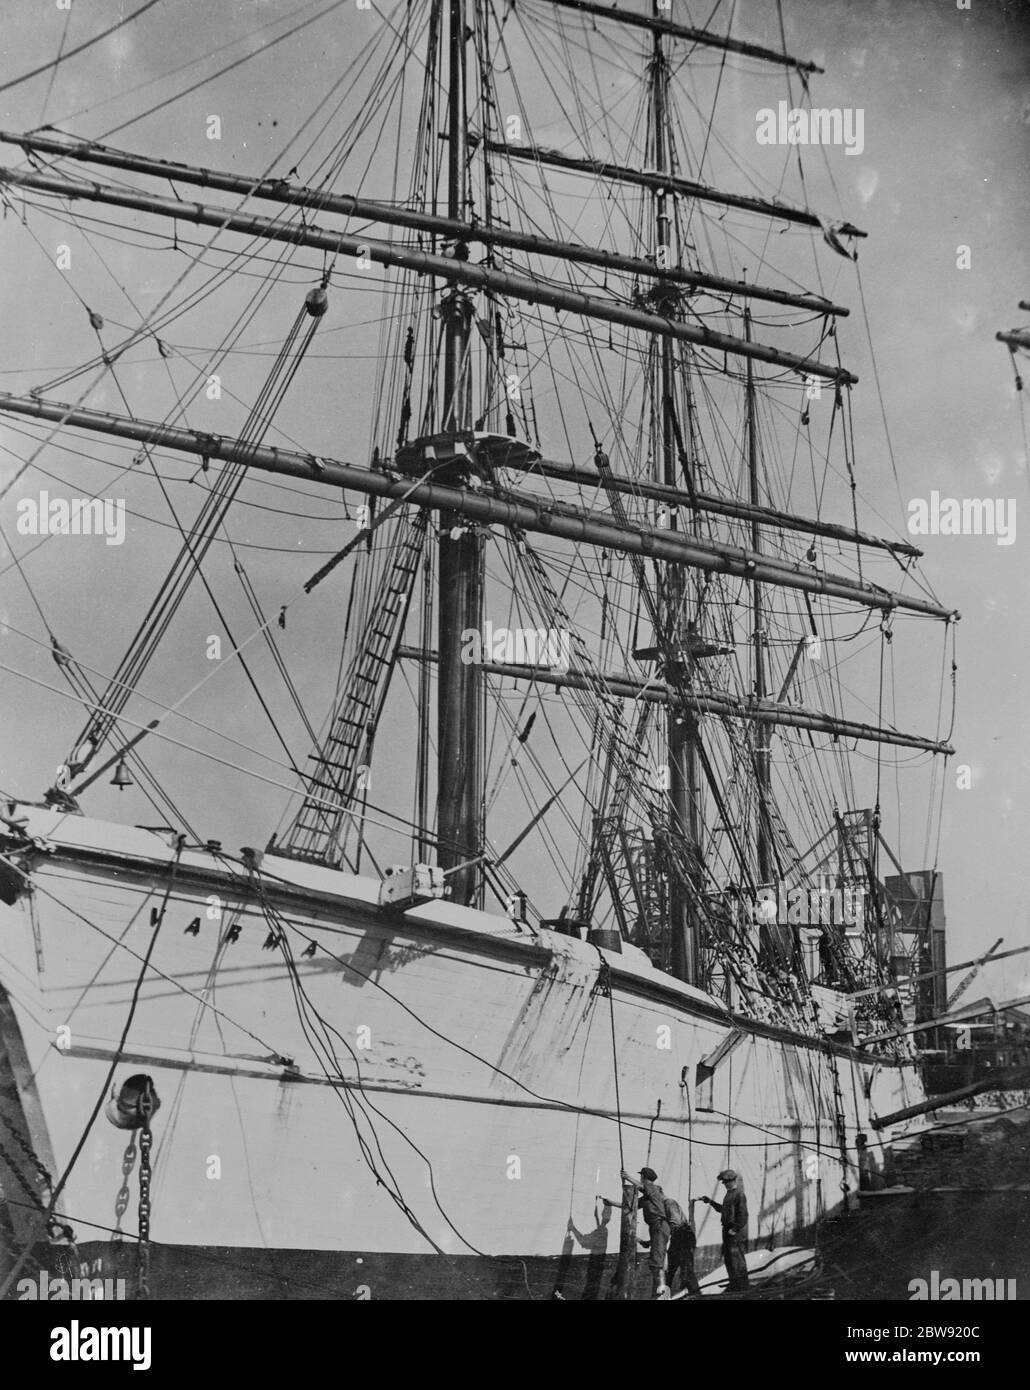 Die finnische Windjammer "Varma" , einer der letzten Rasse der großen kommerziellen Segelschiffe , wird in der Regent ' s Canal Docks , Stepney neu lackiert. 1936 Stockfoto